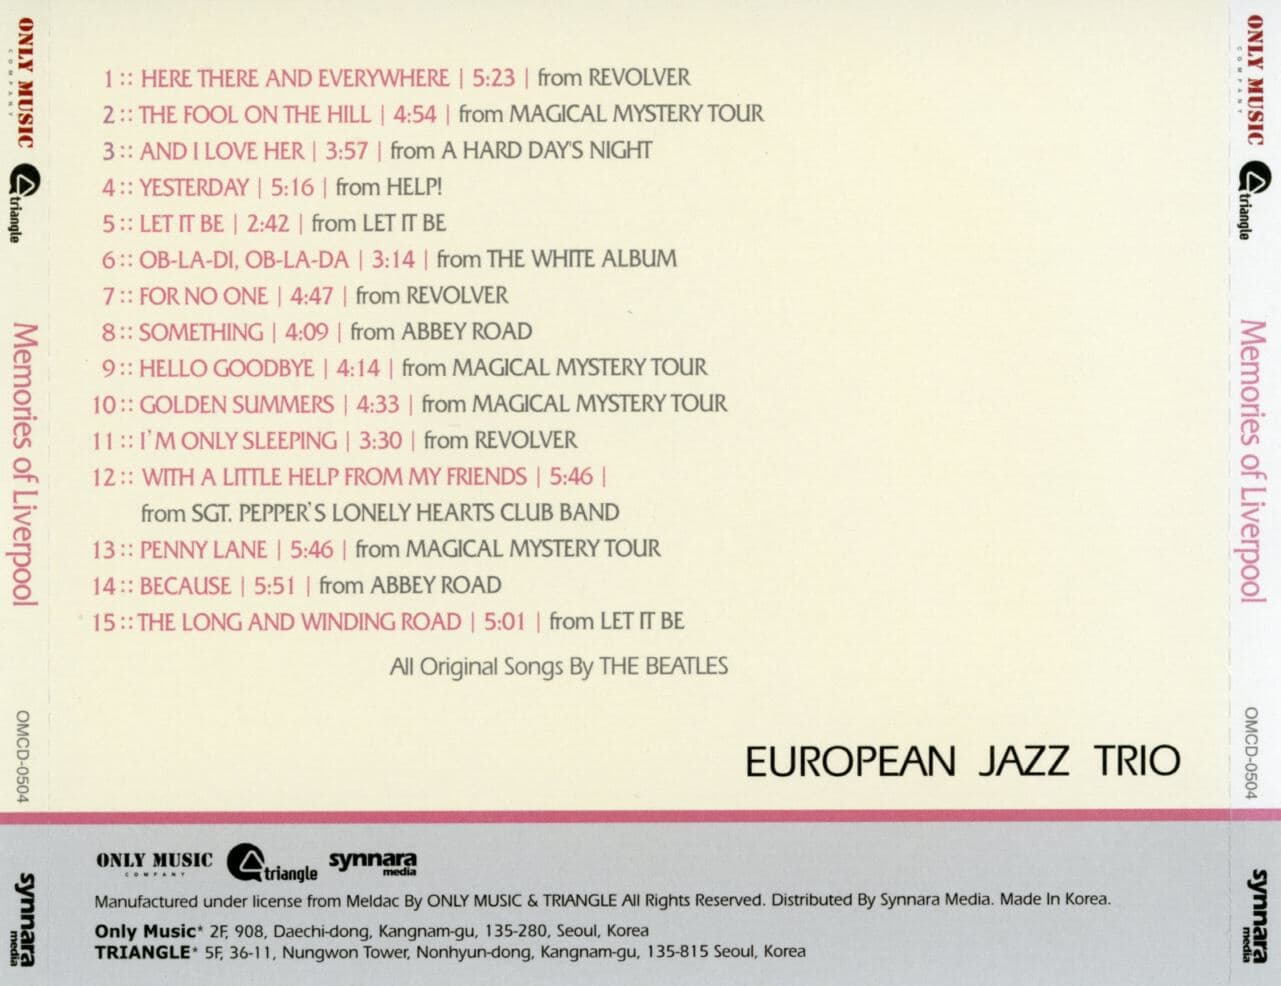 유러피안 재즈 트리오 - European Jazz Trio - Memories of Liverpool